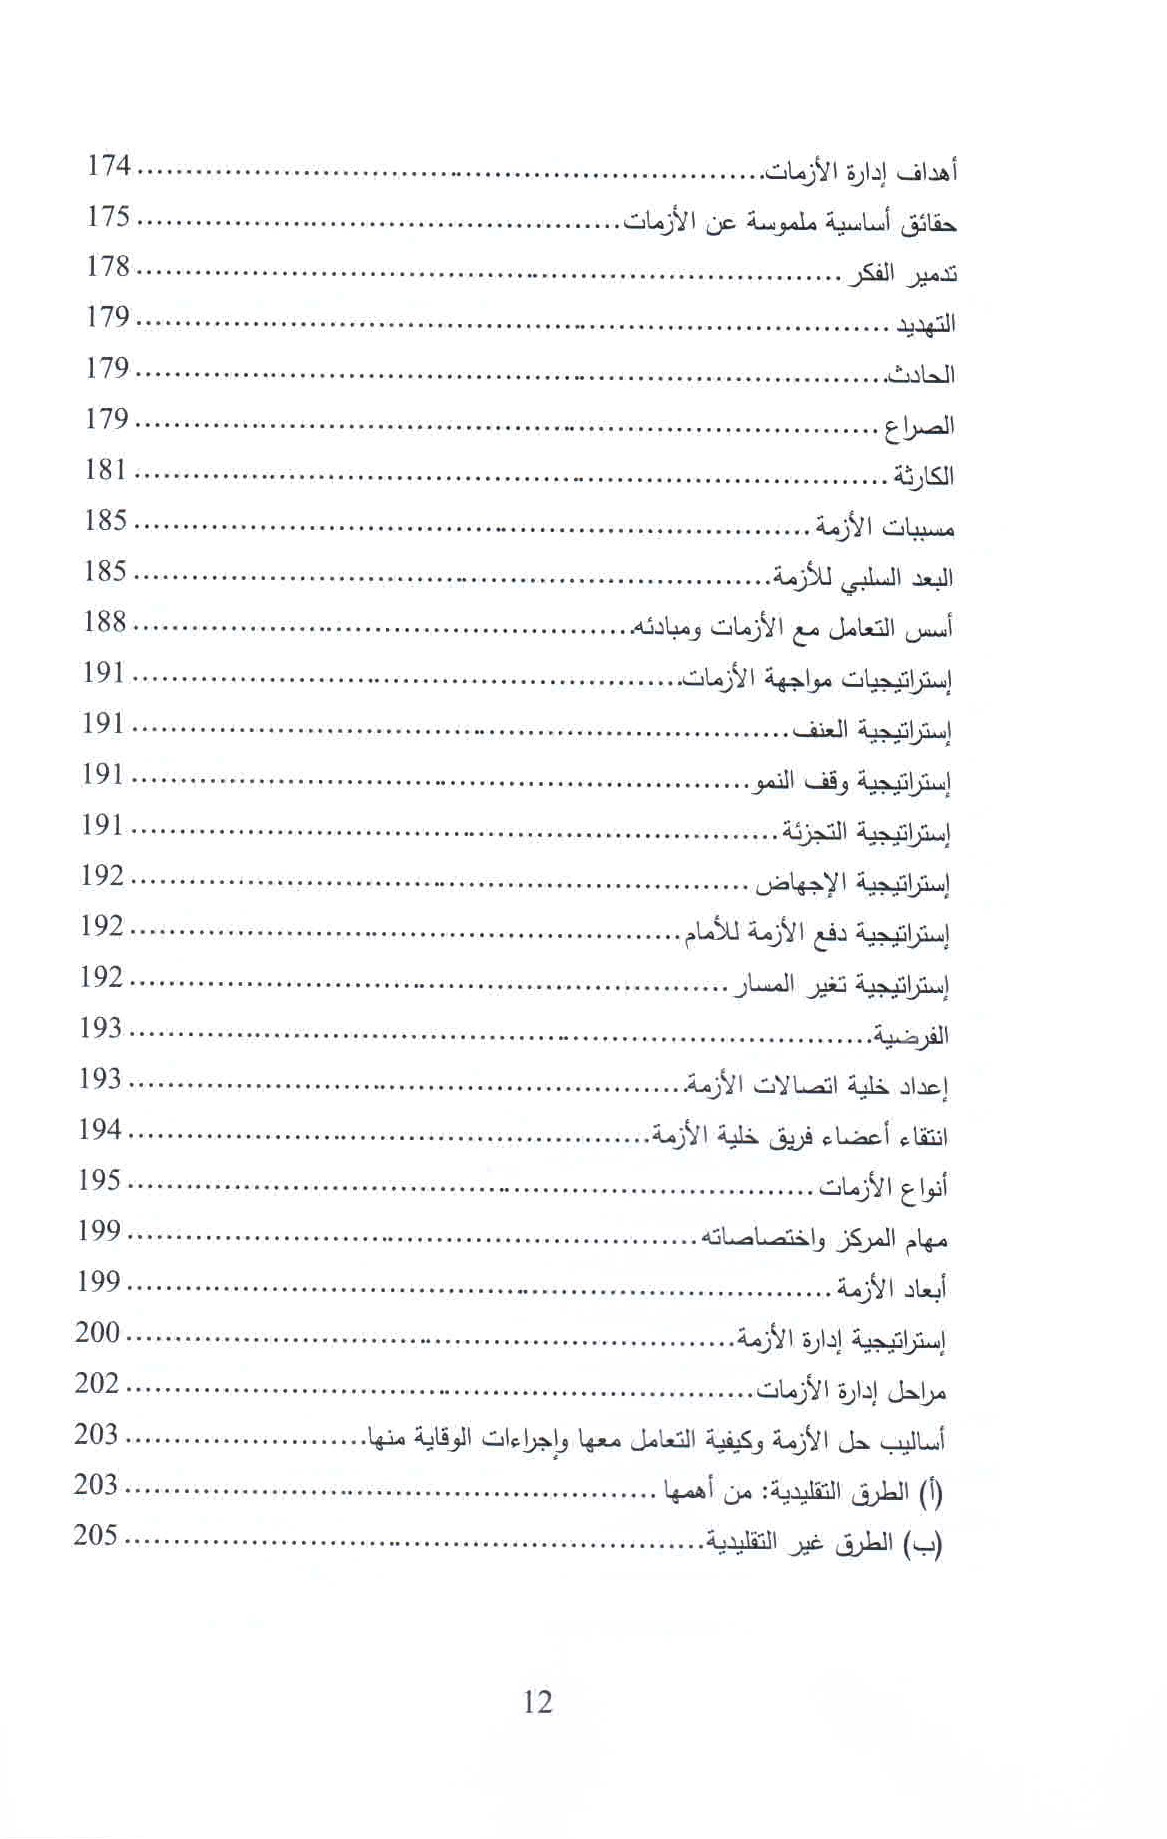   قائمة محتويات كتاب الإدمان الرقمي ص. 12